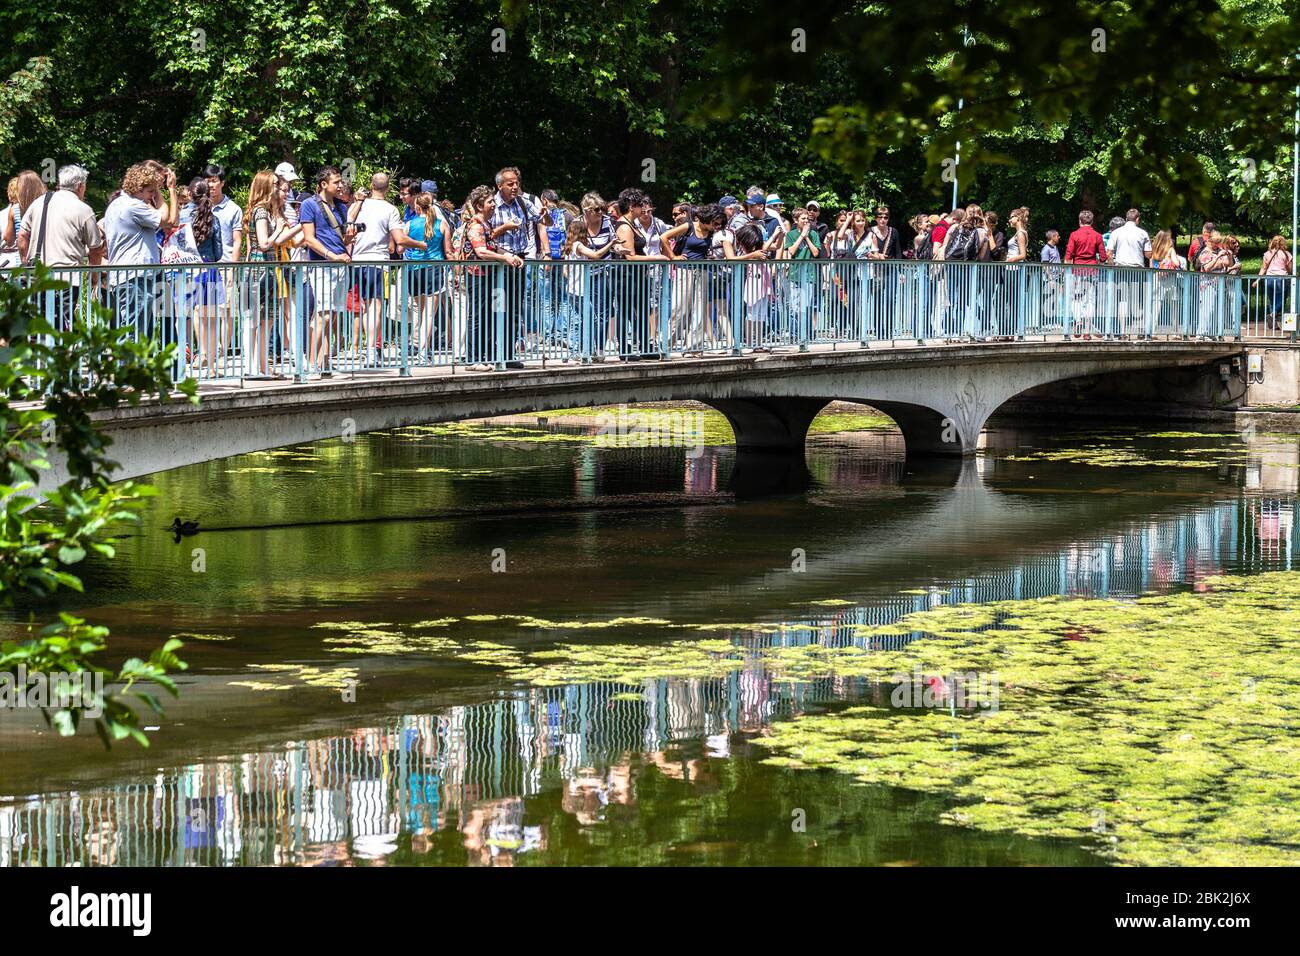 Il ponte pedonale del parco di St James è affollato di turisti e visitatori in una giornata estiva, Londra, Inghilterra, Regno Unito. Foto Stock